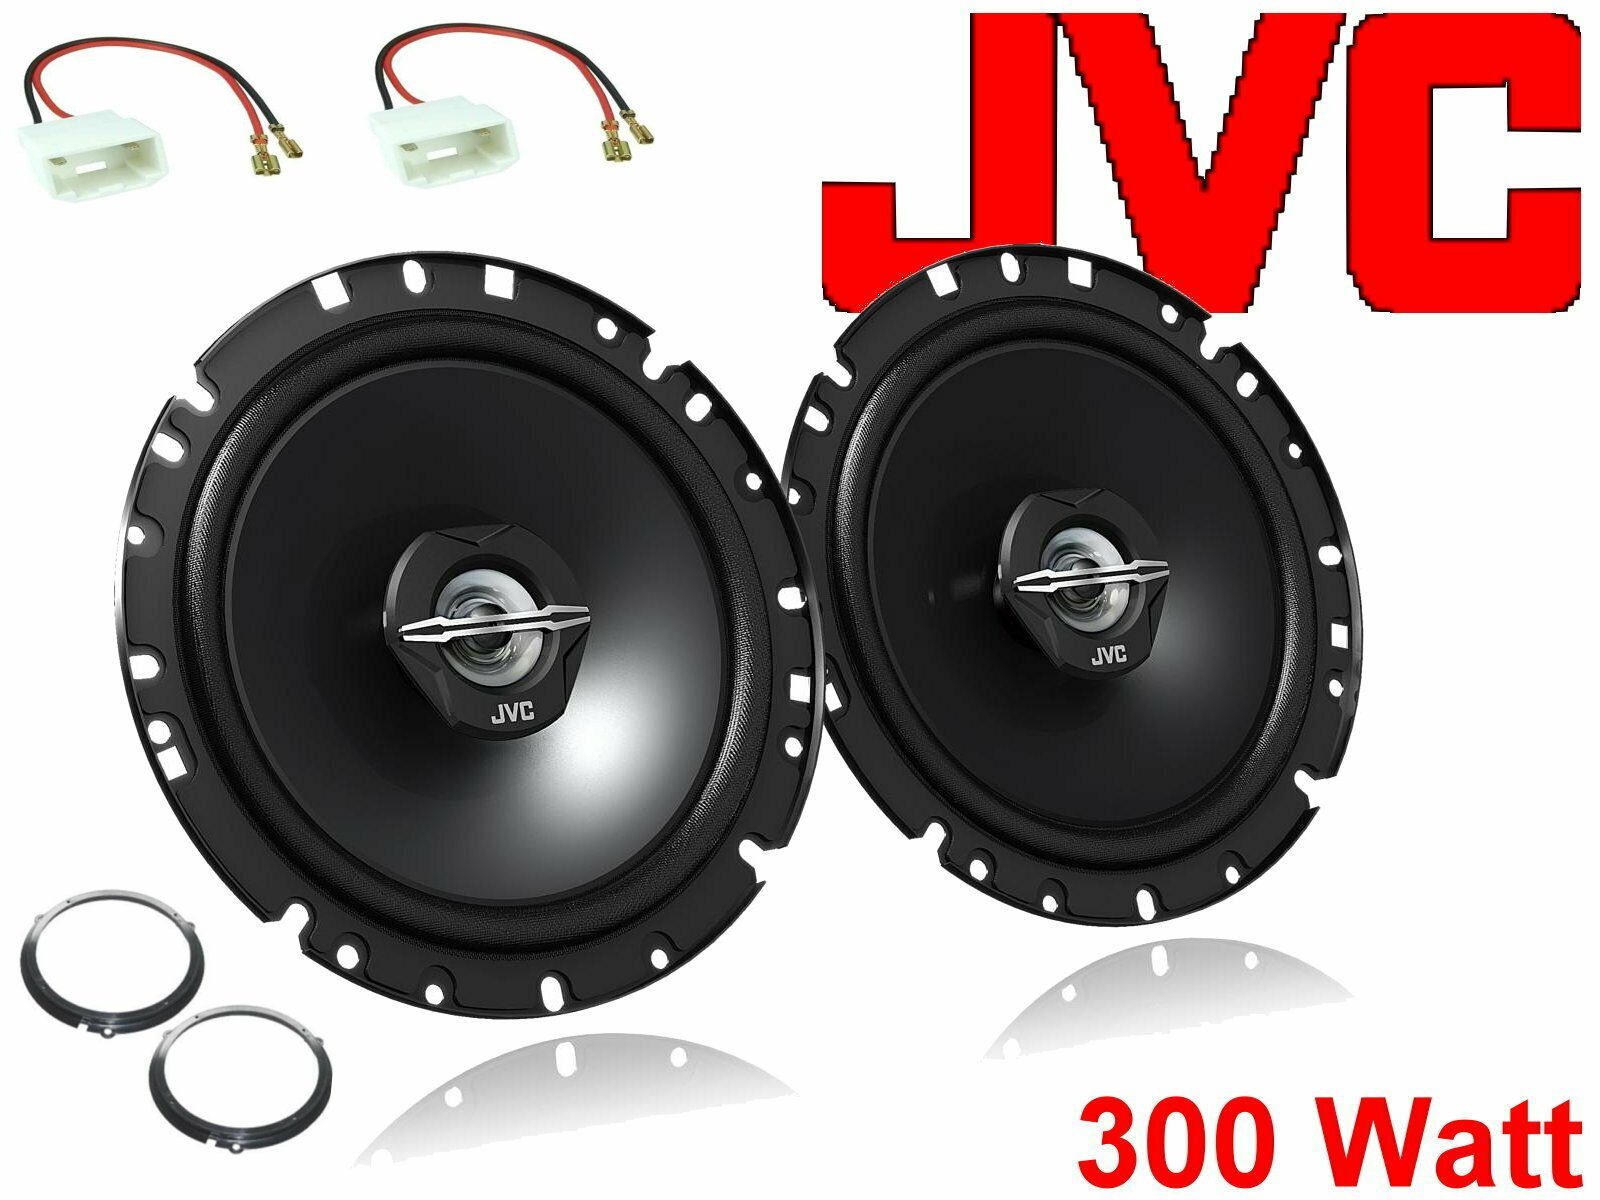 DSX JVC passend für Ford Focus DYB Bj 12/10-20 Lauts Auto-Lautsprecher (30 W)